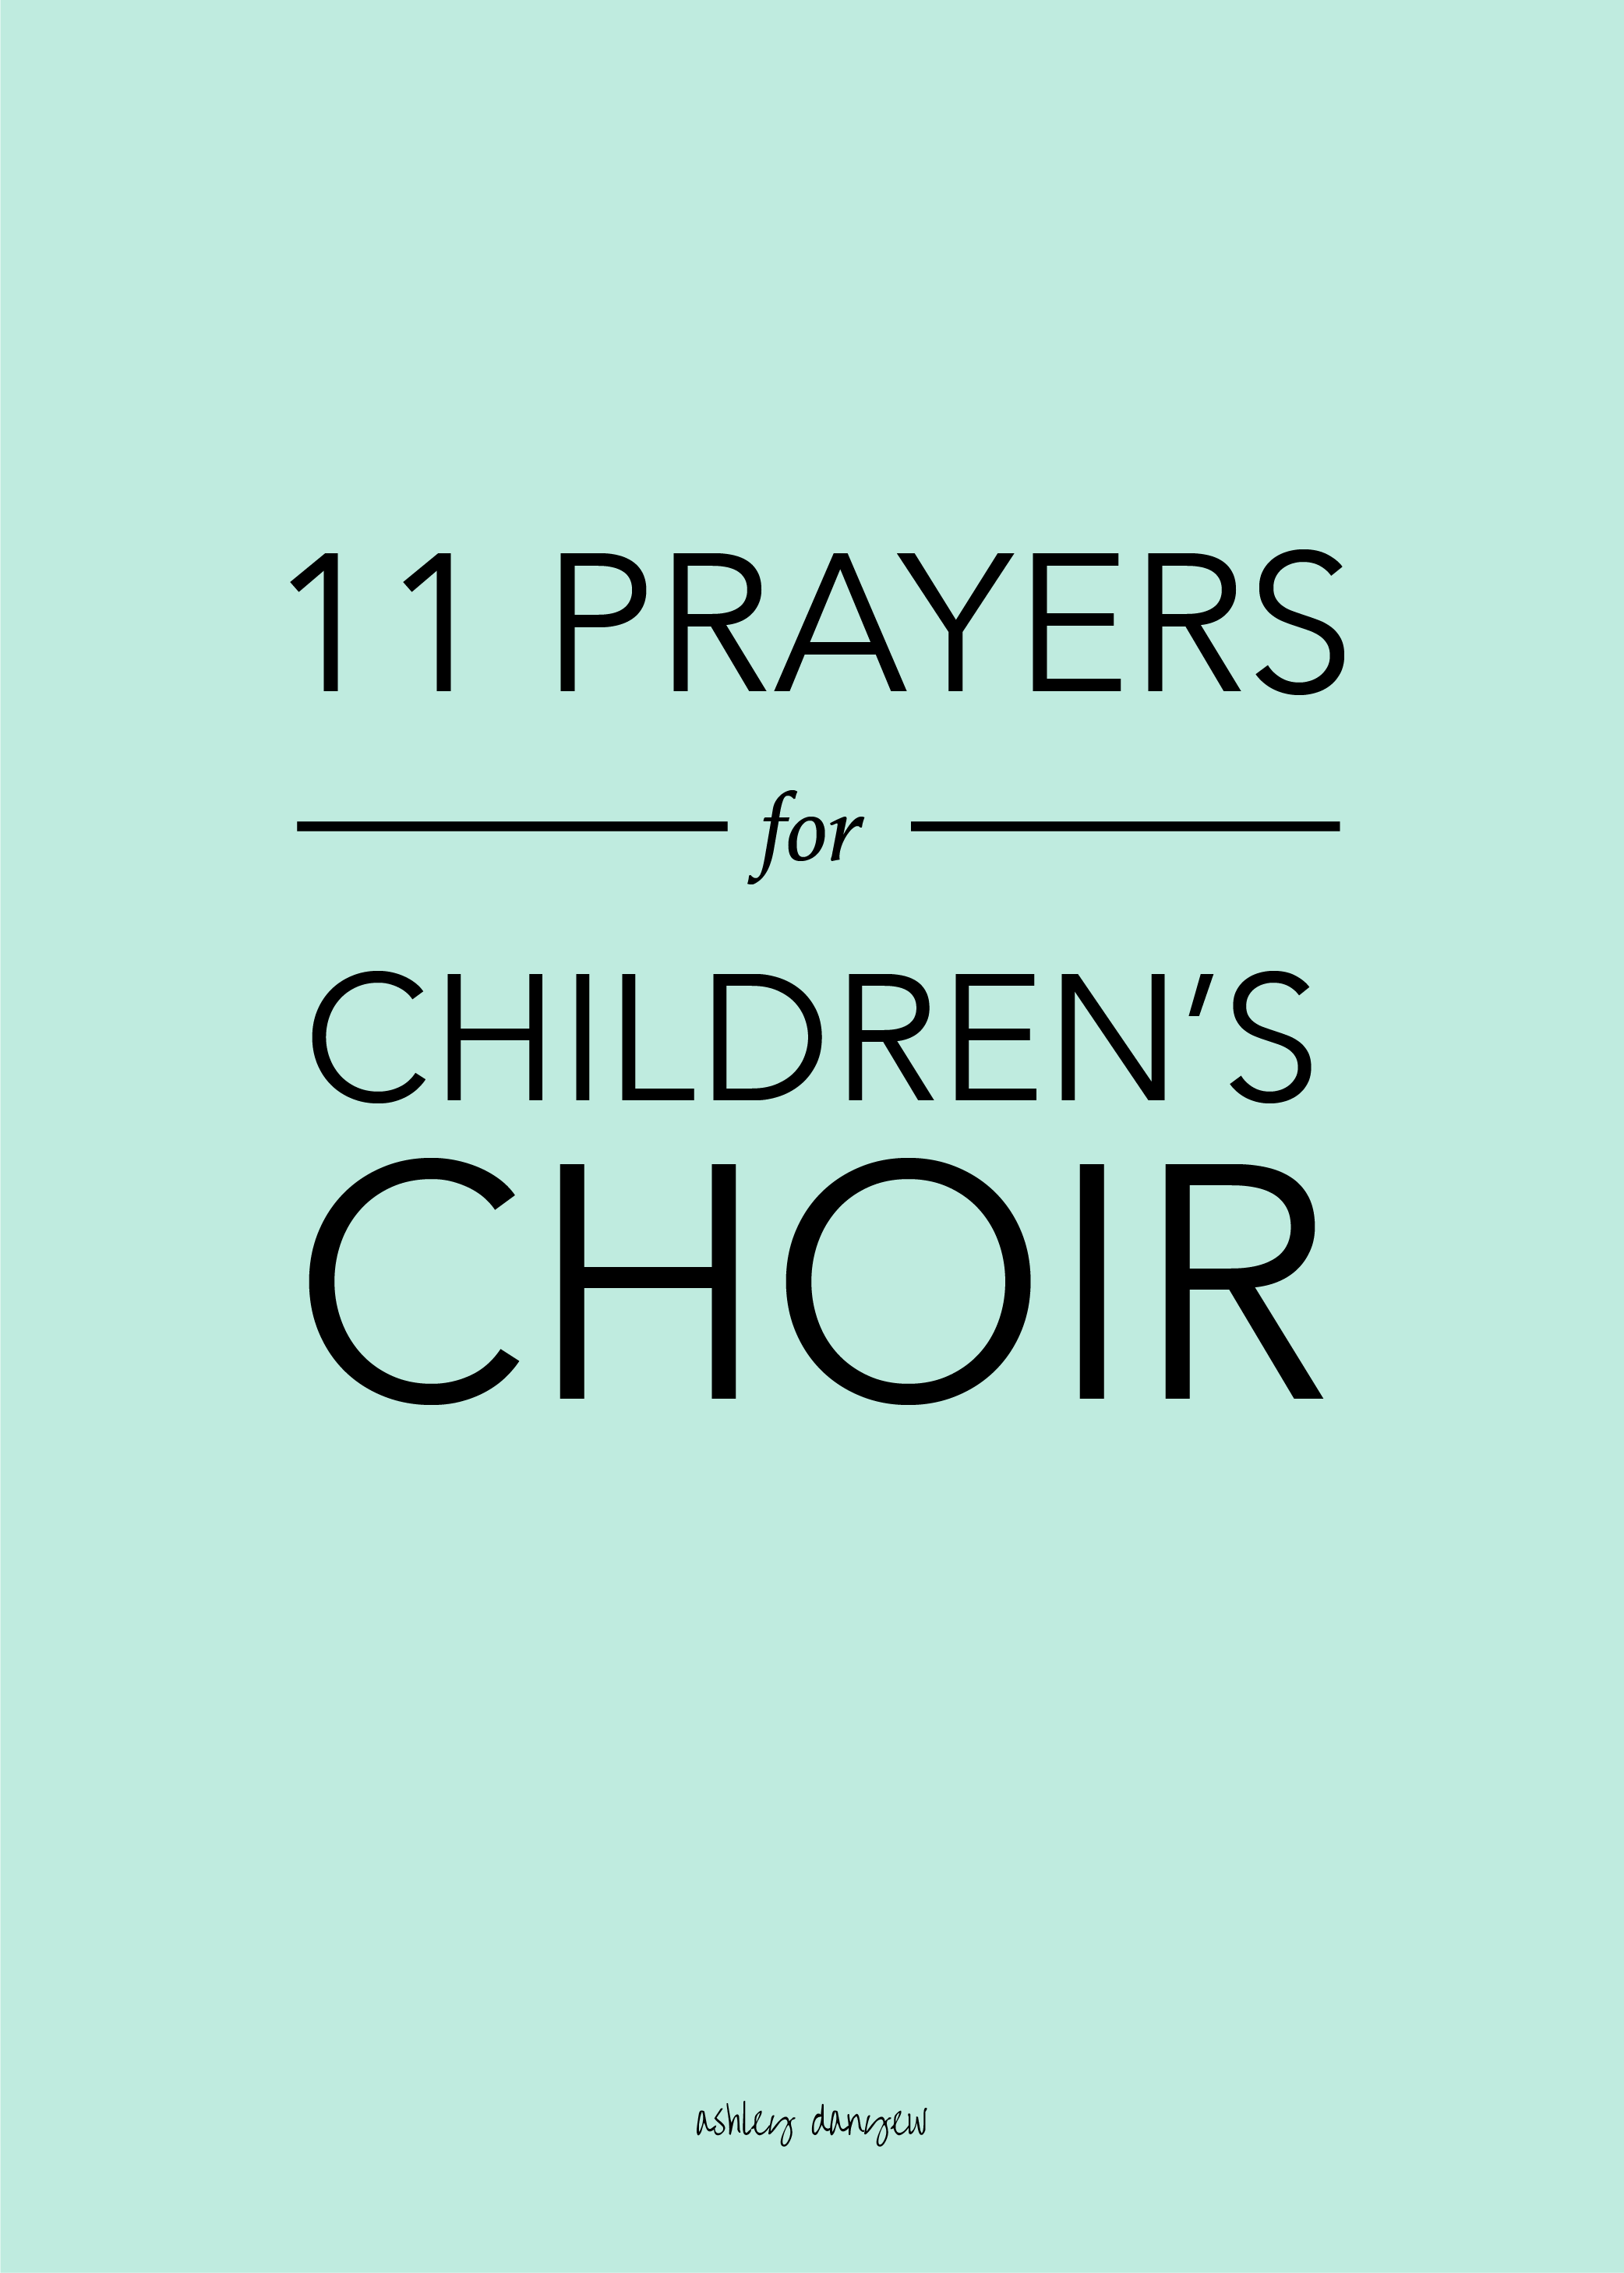 11 Prayers for Children's Choir